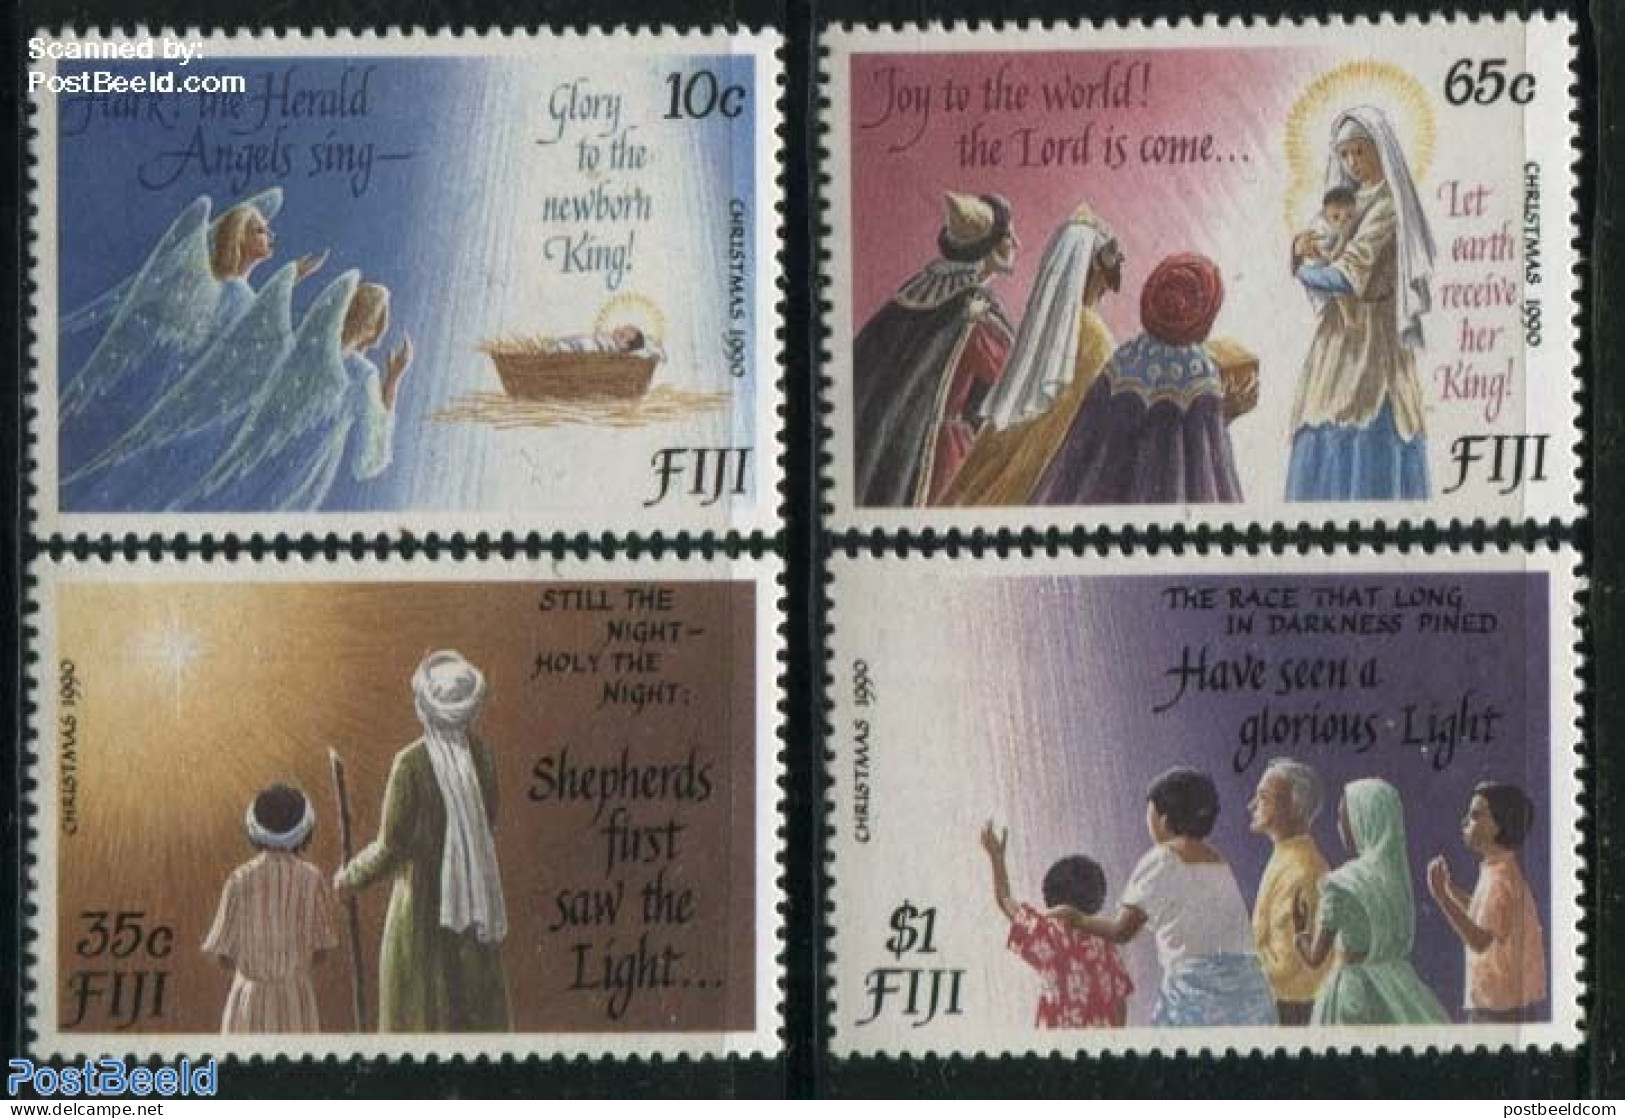 Fiji 1990 Christmas 4v, Mint NH, Religion - Christmas - Christmas